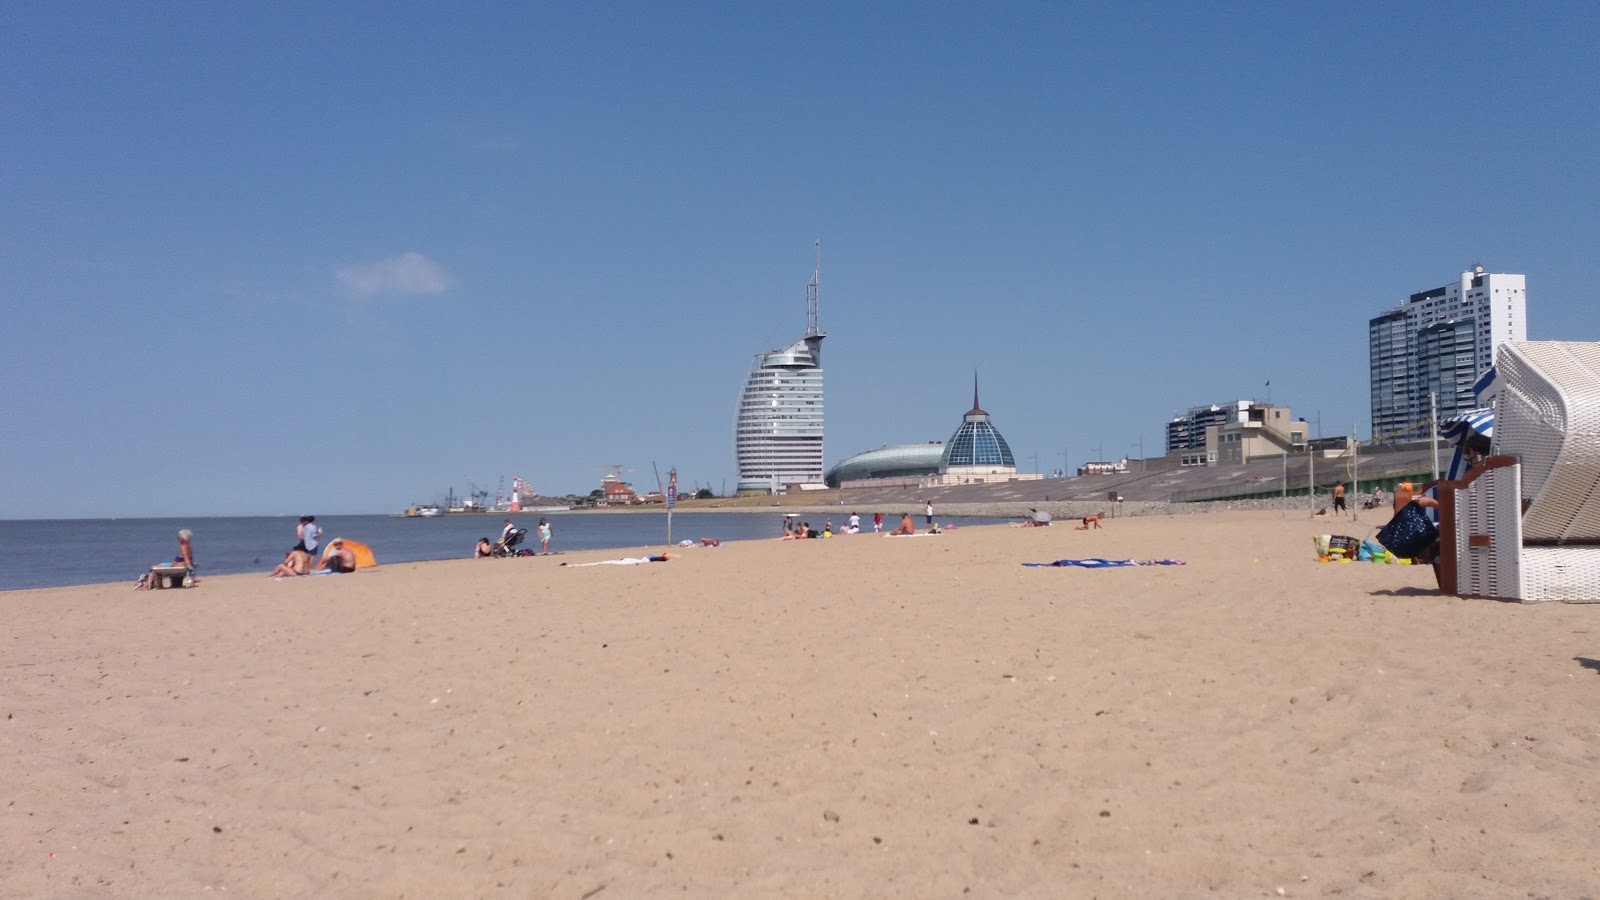 Valokuva Bremerhavenin ranta (Weserin ranta)ista. pinnalla kirkas hiekka:n kanssa